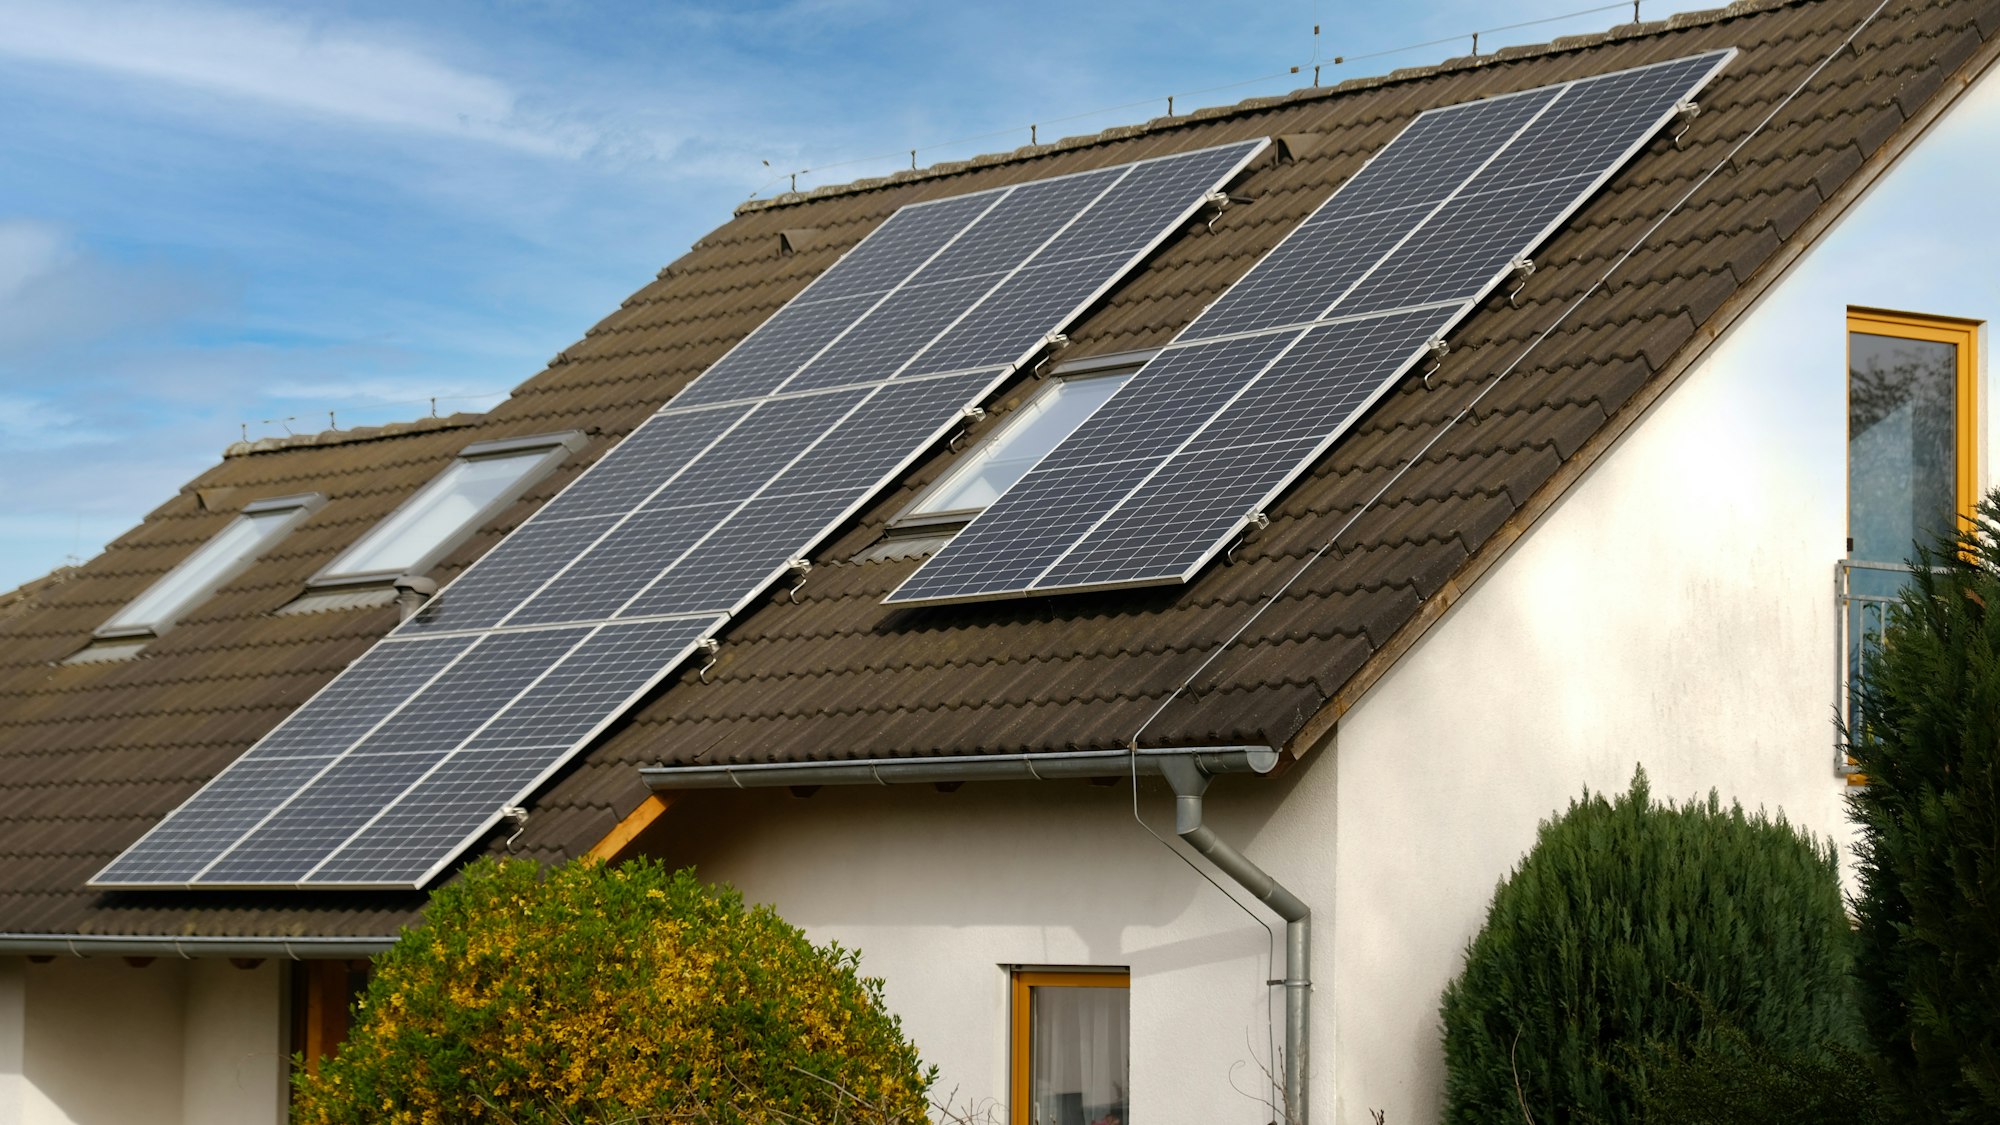 Home solar panel. Alternative energy for house.